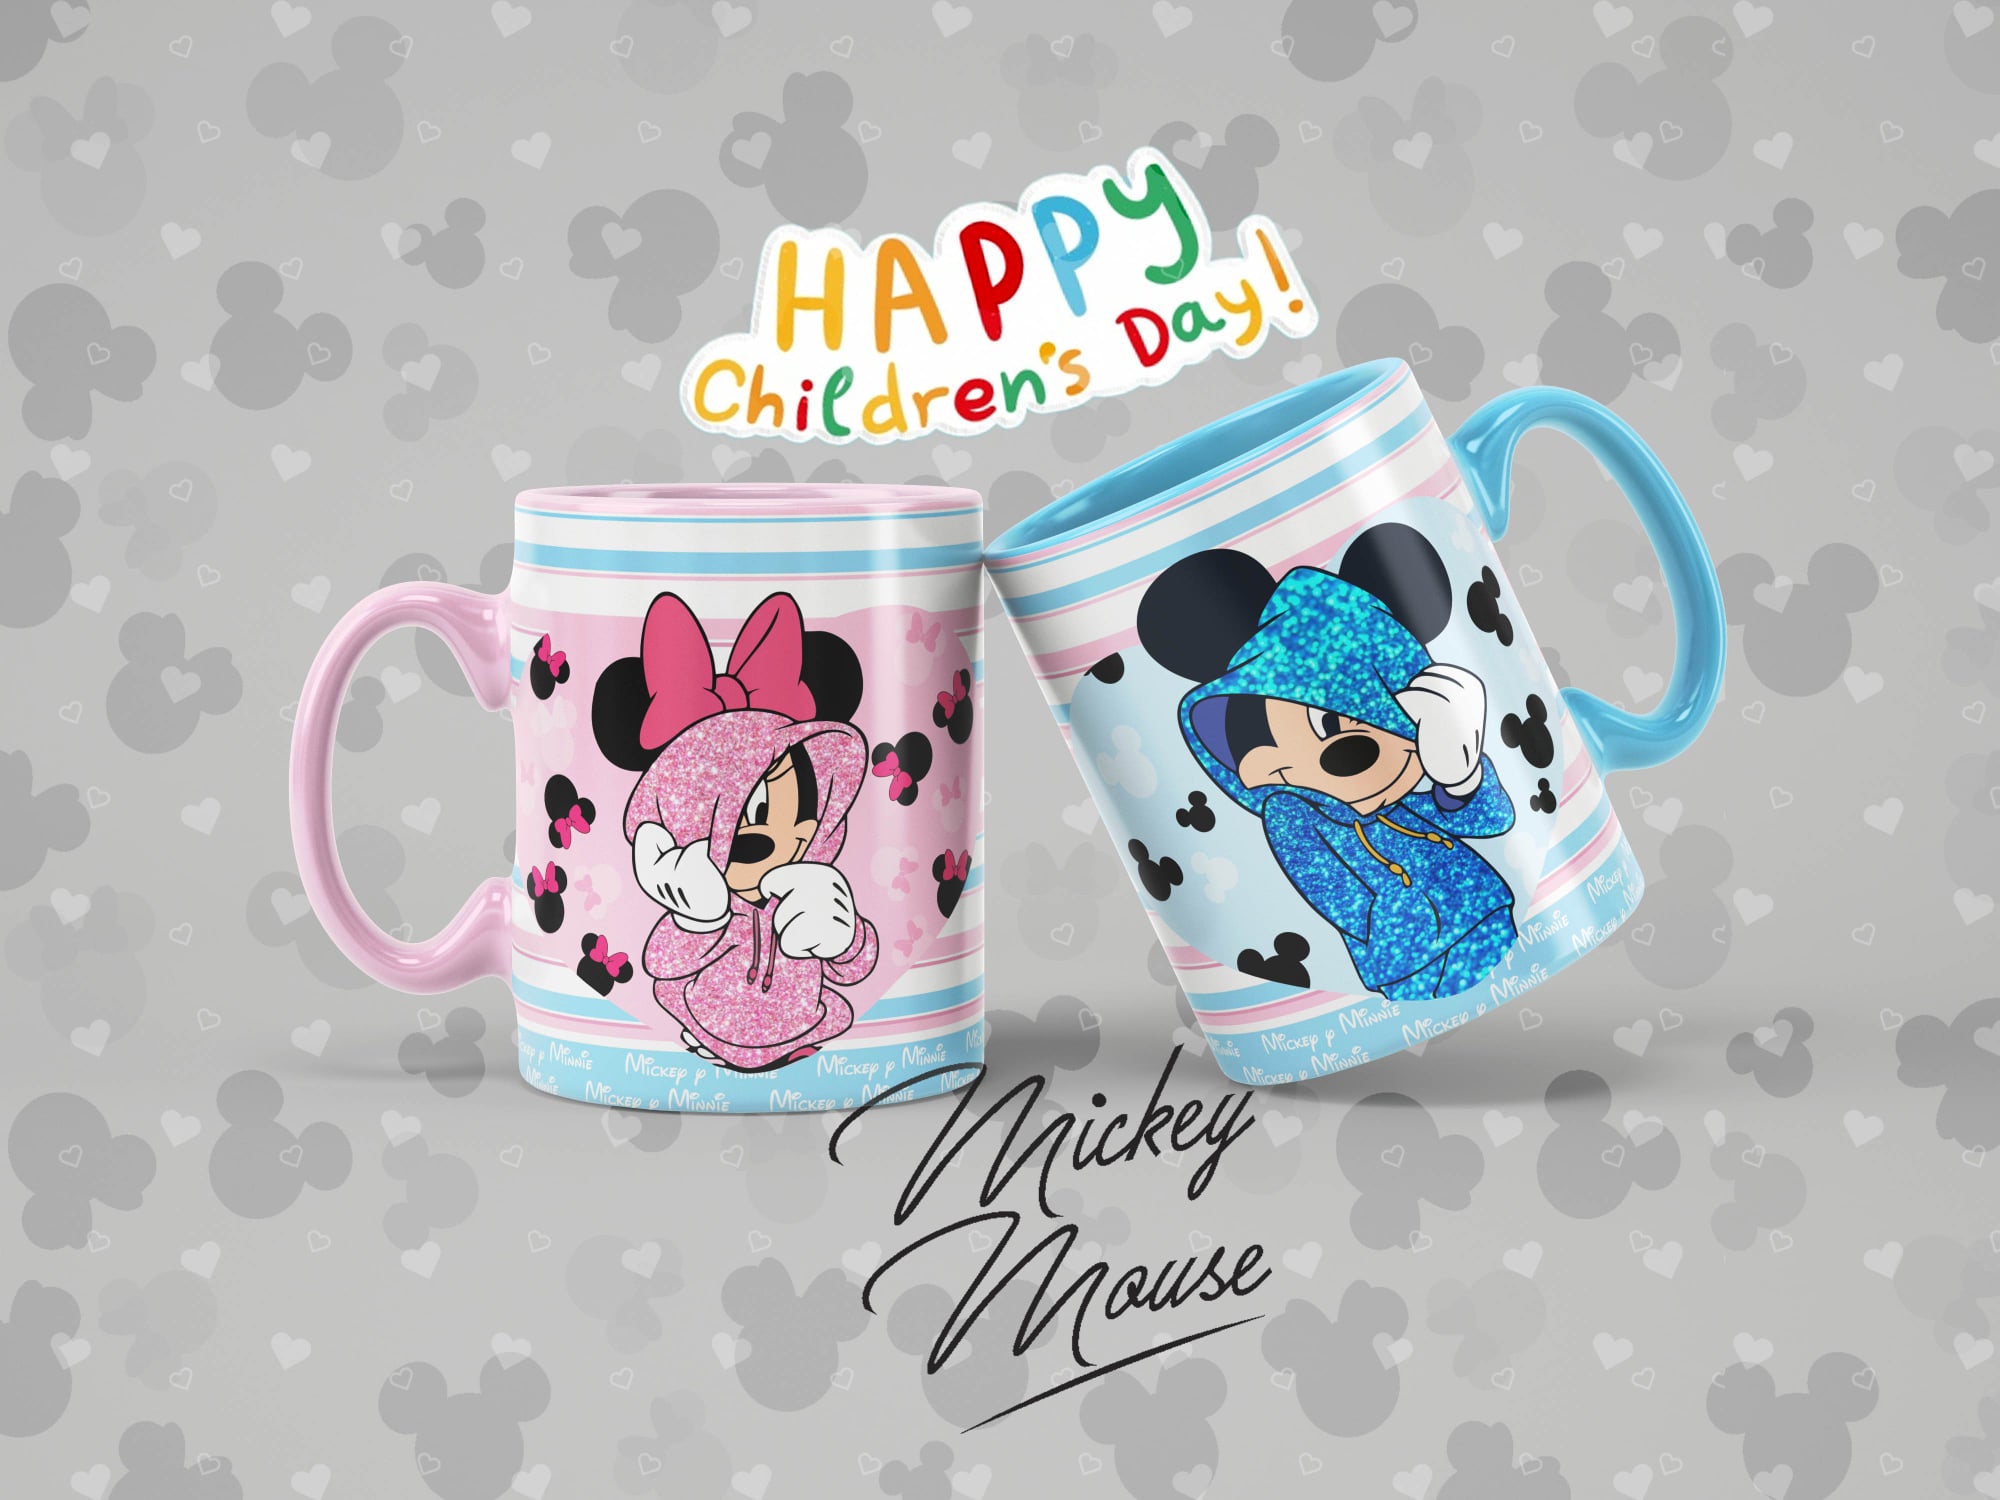 Disney Mickey Mouse - Taza para café y té con diseño de Mickey Mouse